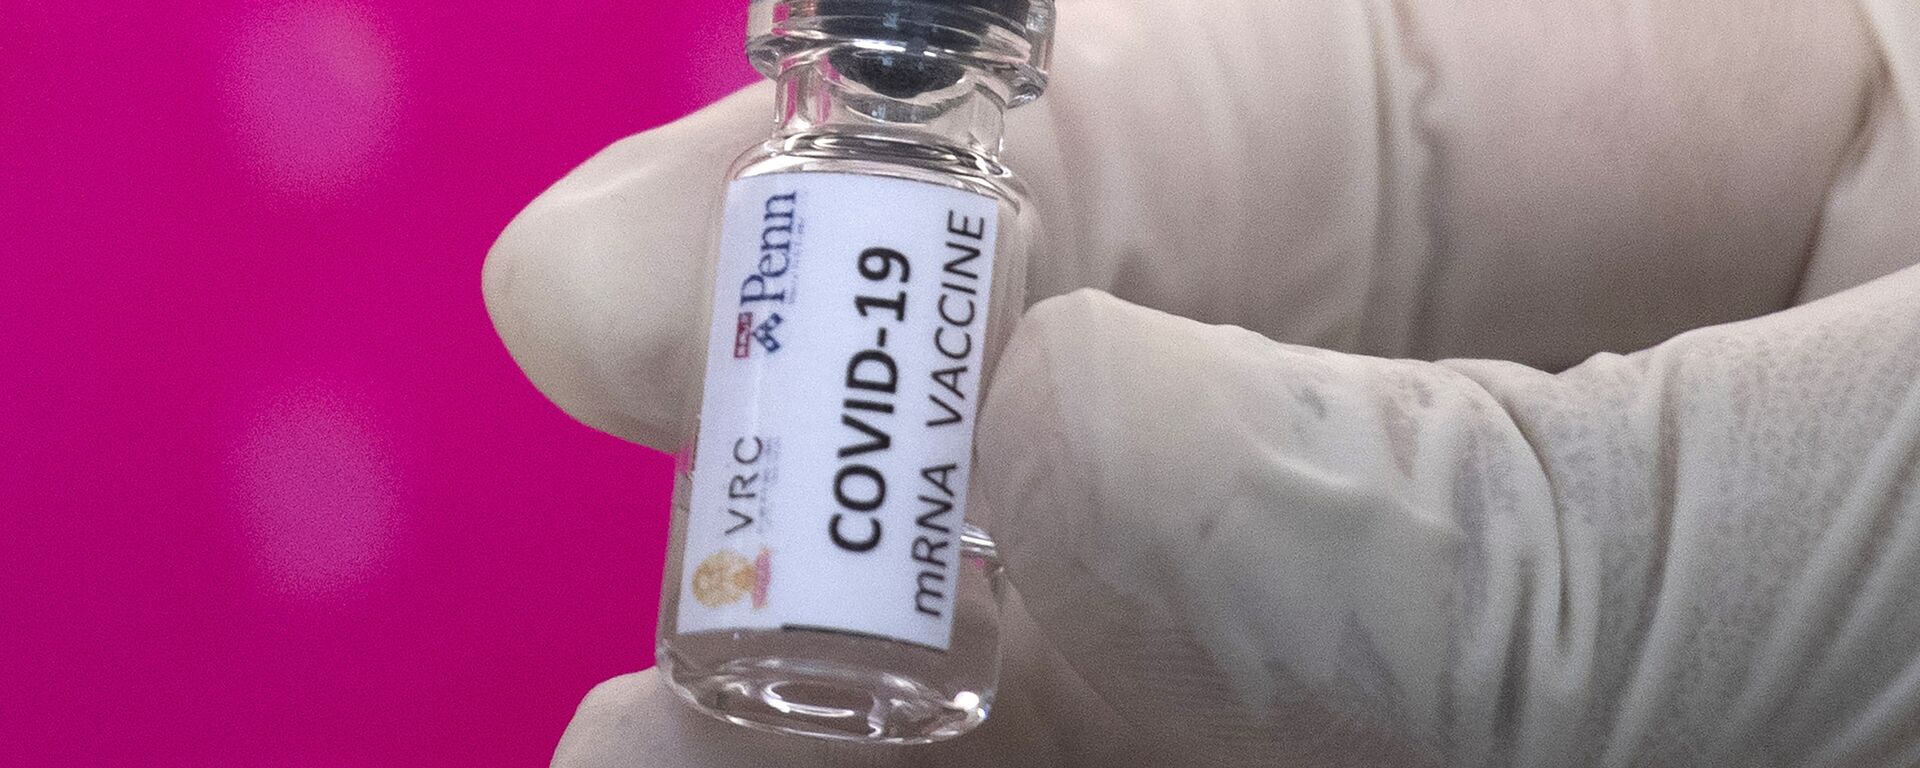 Вакцина от COVID-19 во время тестирования в исследовательском центре вакцин - Sputnik Таджикистан, 1920, 03.08.2020